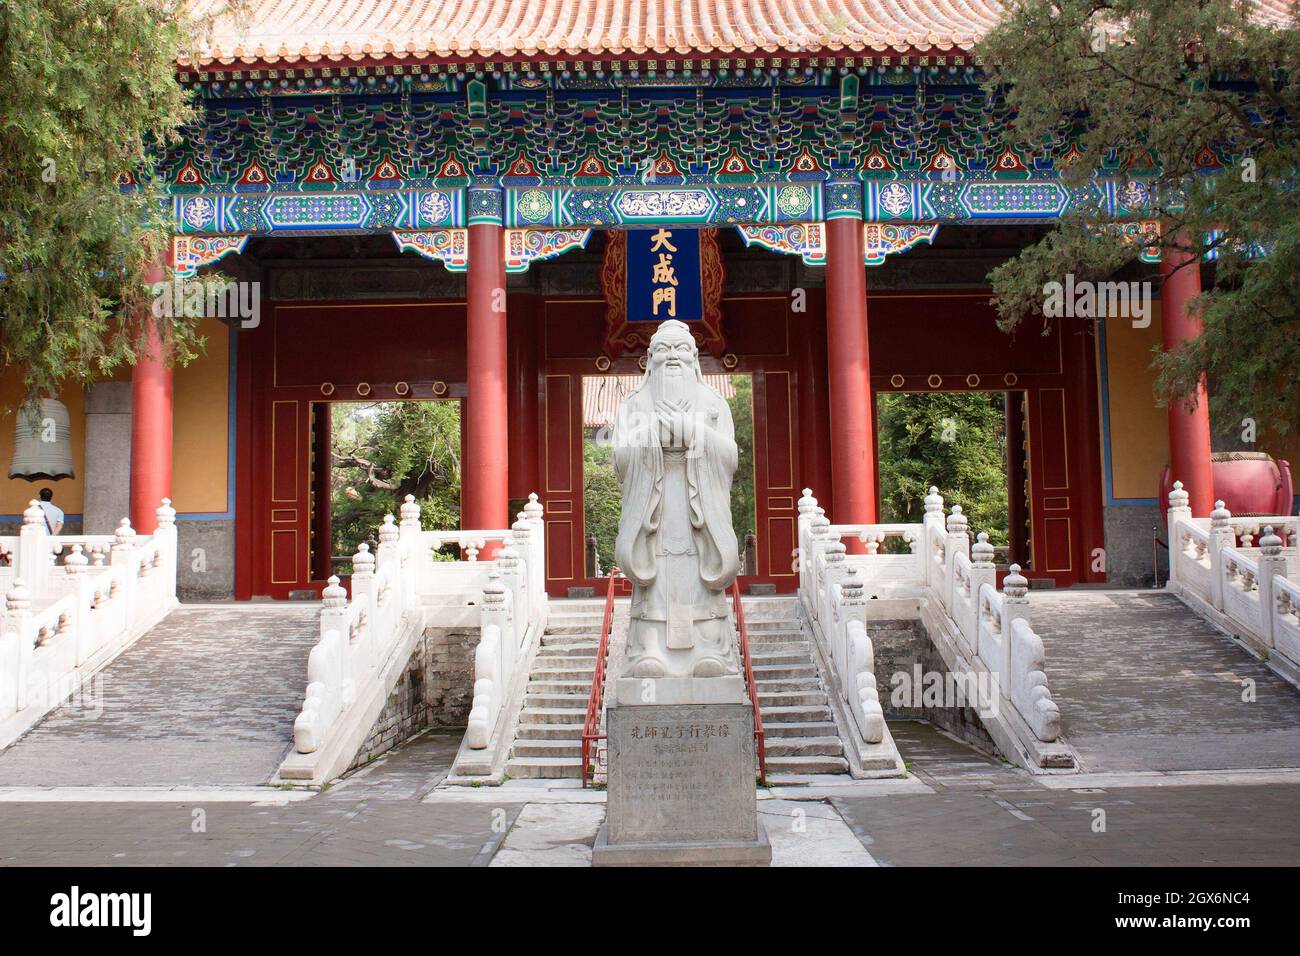 PÉKIN, CHINE - 1er SEPTEMBRE 2010 - vue de l'ancien temple confucianiste - il y a un des meilleurs temples de Pékin, chine Banque D'Images